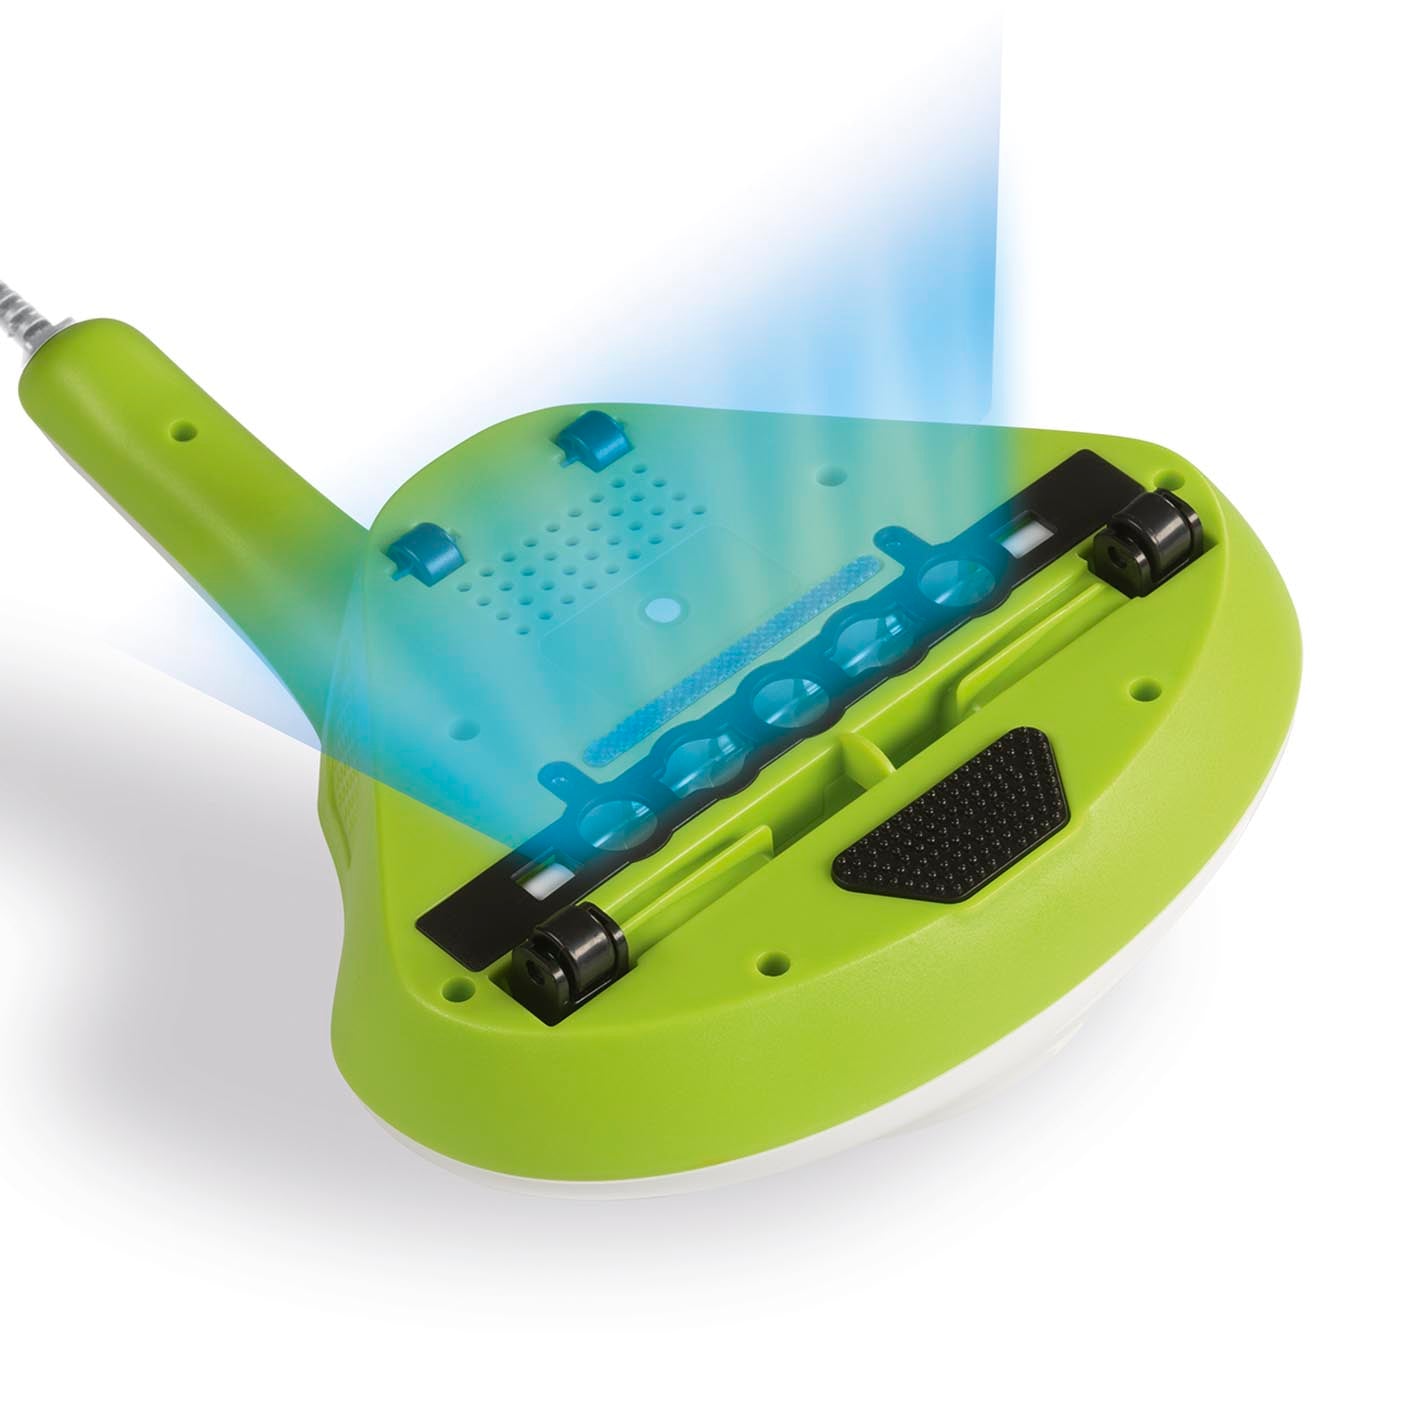 Milben-Handstaubsauger mit UV-C Licht - 300 W - weiß/limegreen